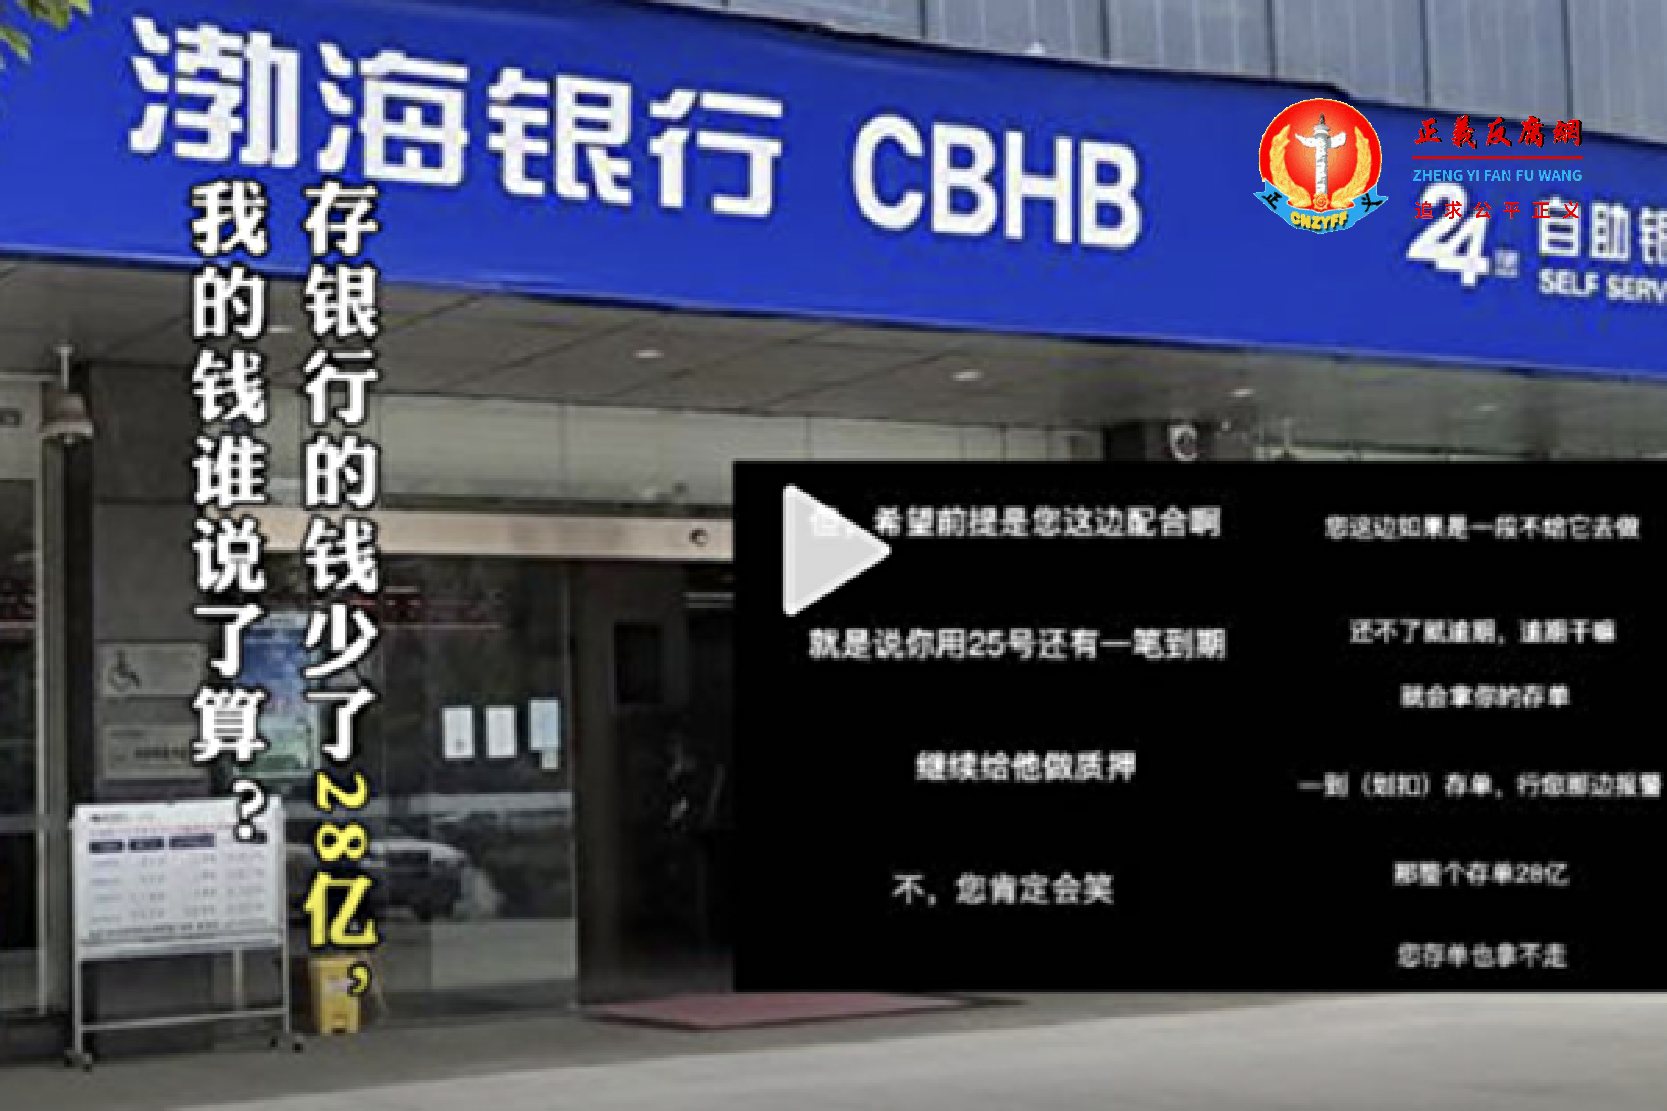 渤海银行“28亿元存款质押”案已受到监管部门关注。.png